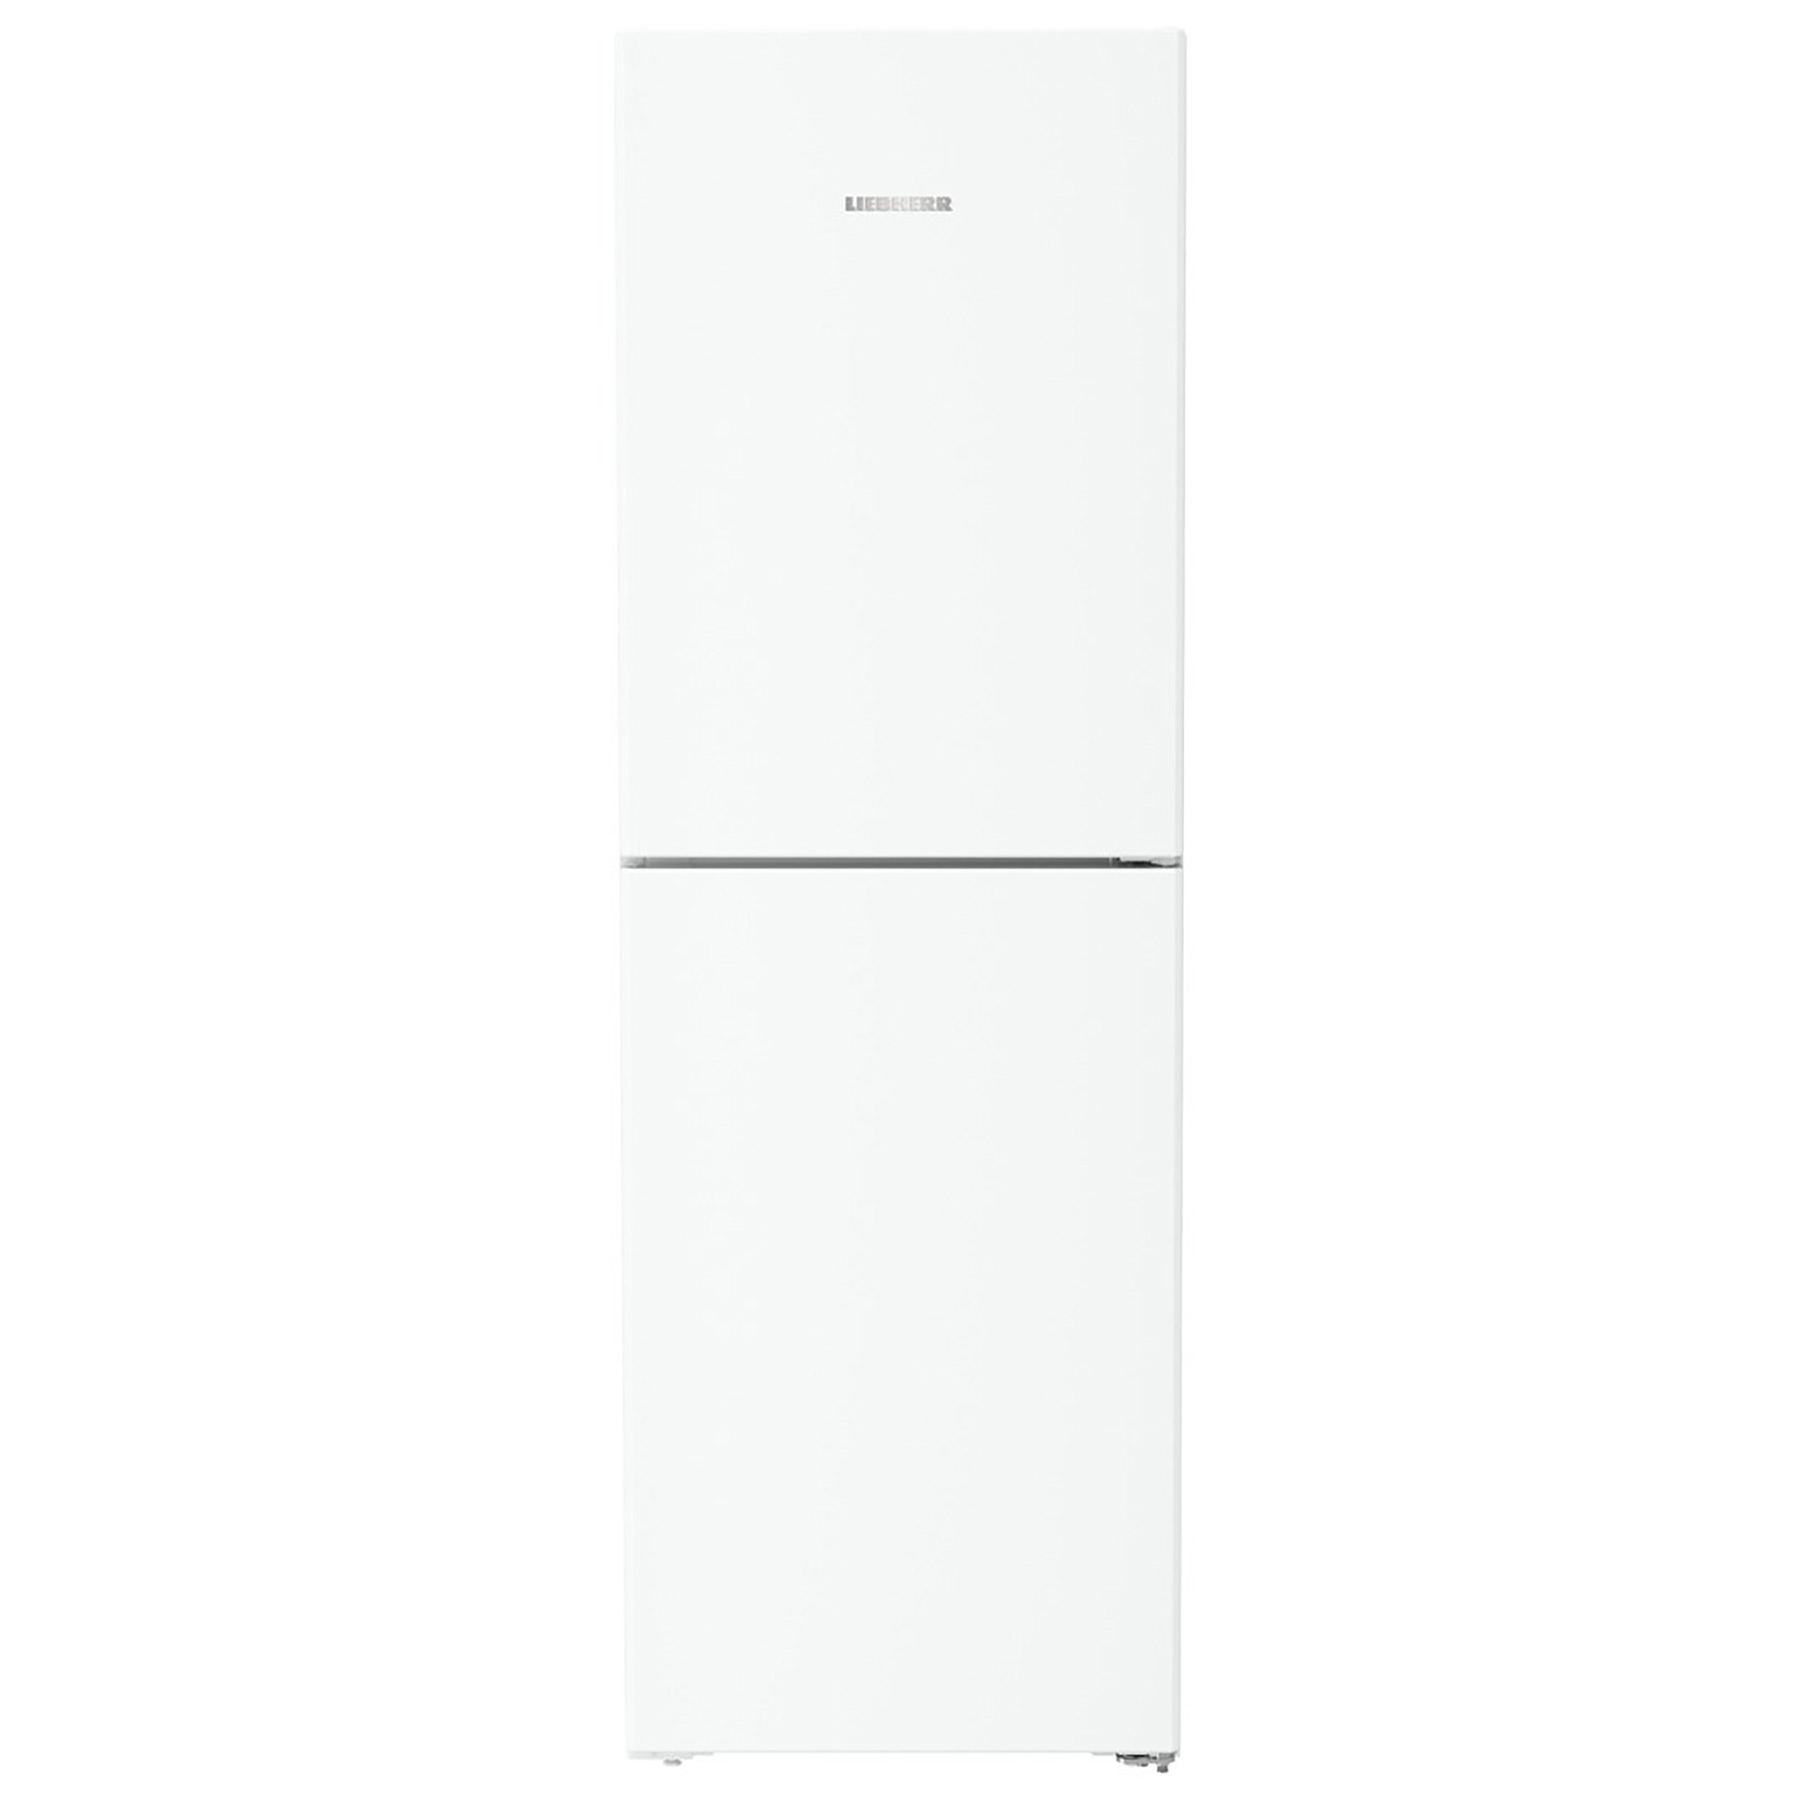 Liebherr CND5204 60cm NoFrost Fridge Freezer in White 1 85m D Rated